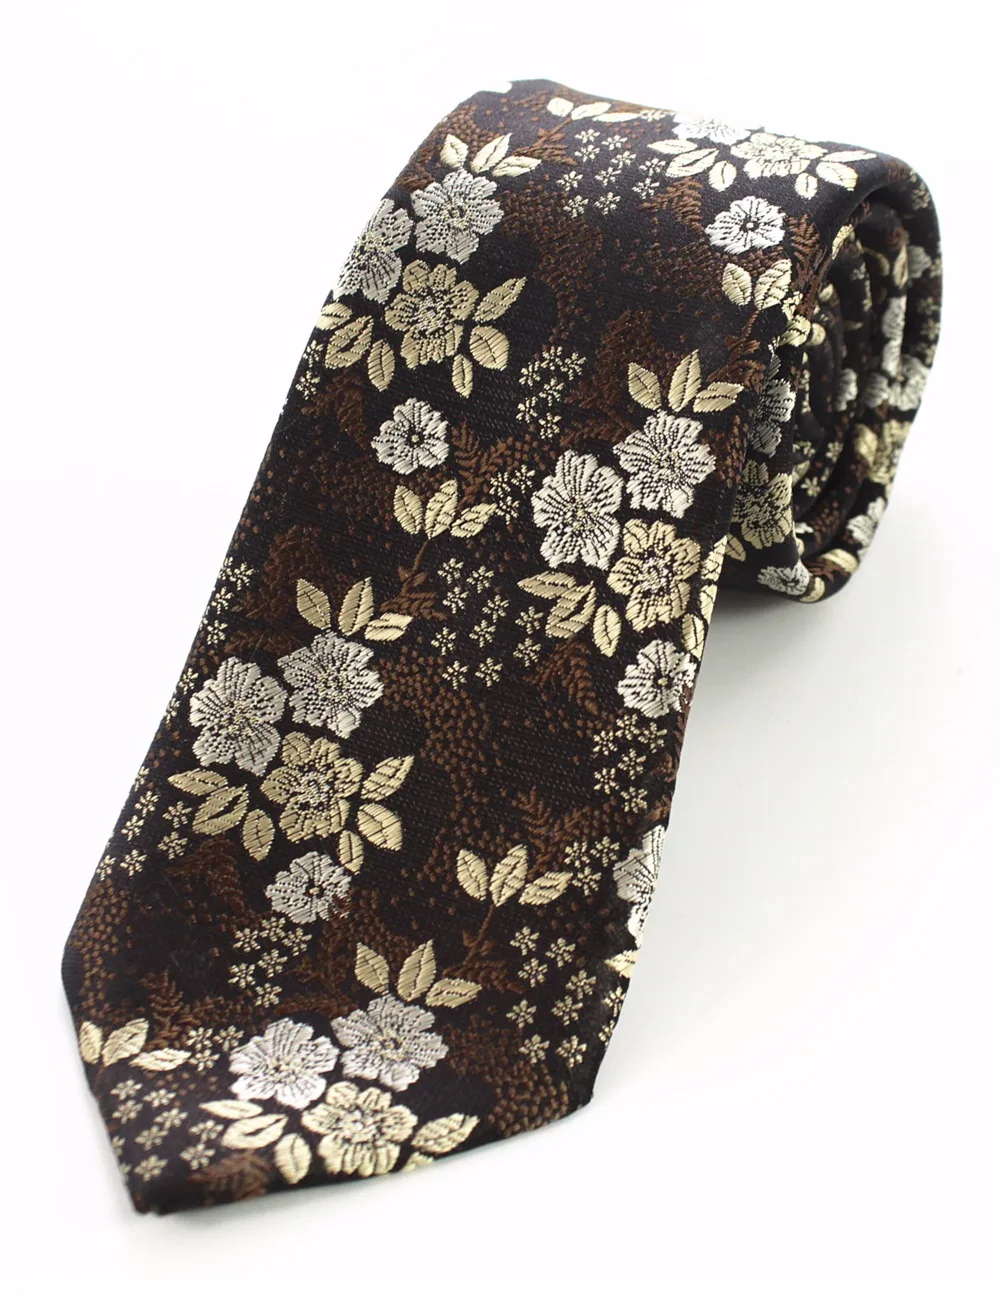 JEMYGINS Оригинал 100% шелк Цветочный шейный платок клип Hanky комплект ручной работы галстук высокого качества карман квадратная игла для